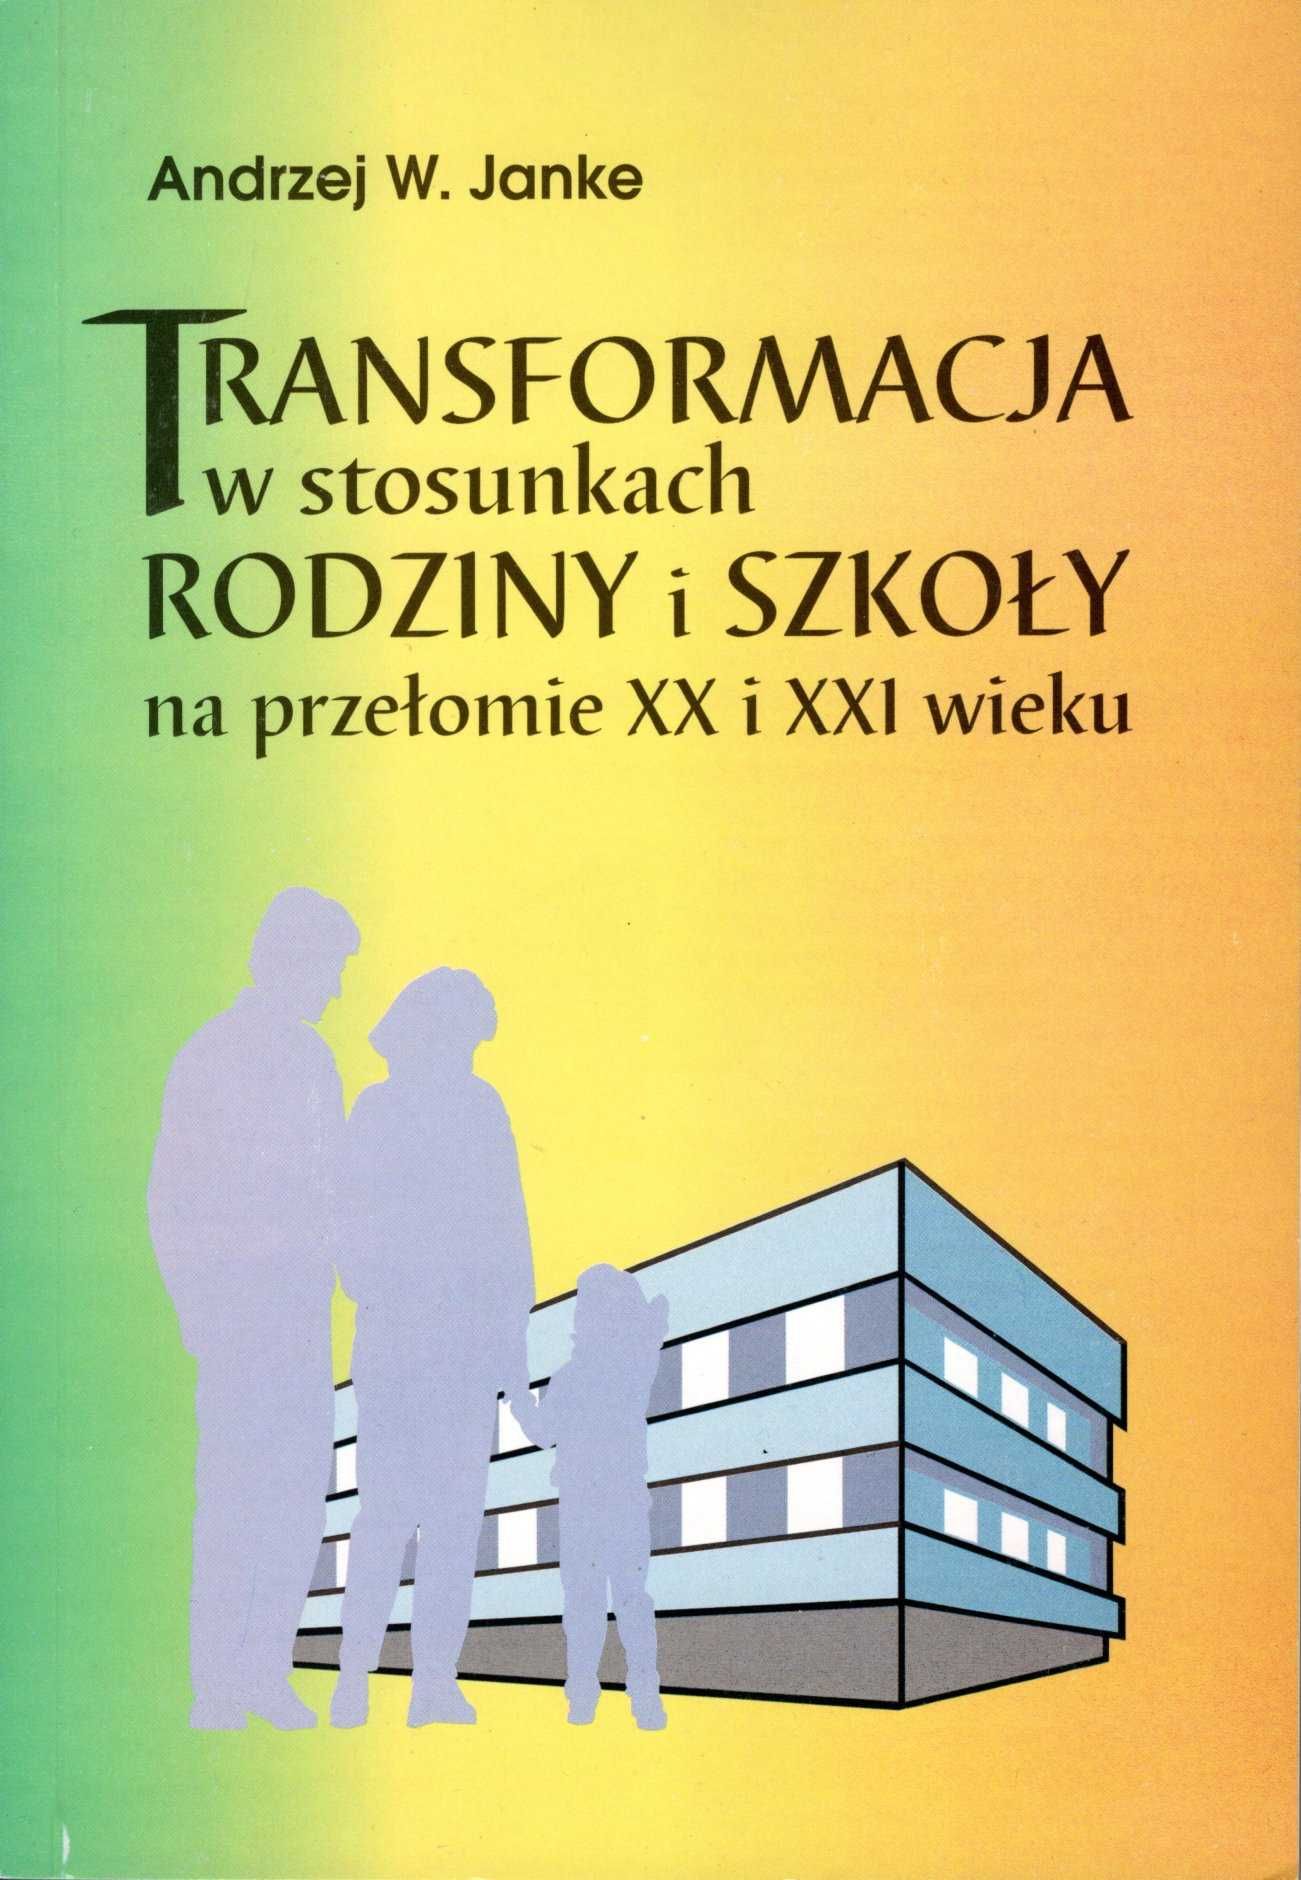 Transformacja w stosunkach rodziny i szkoły - Janke Andrzej